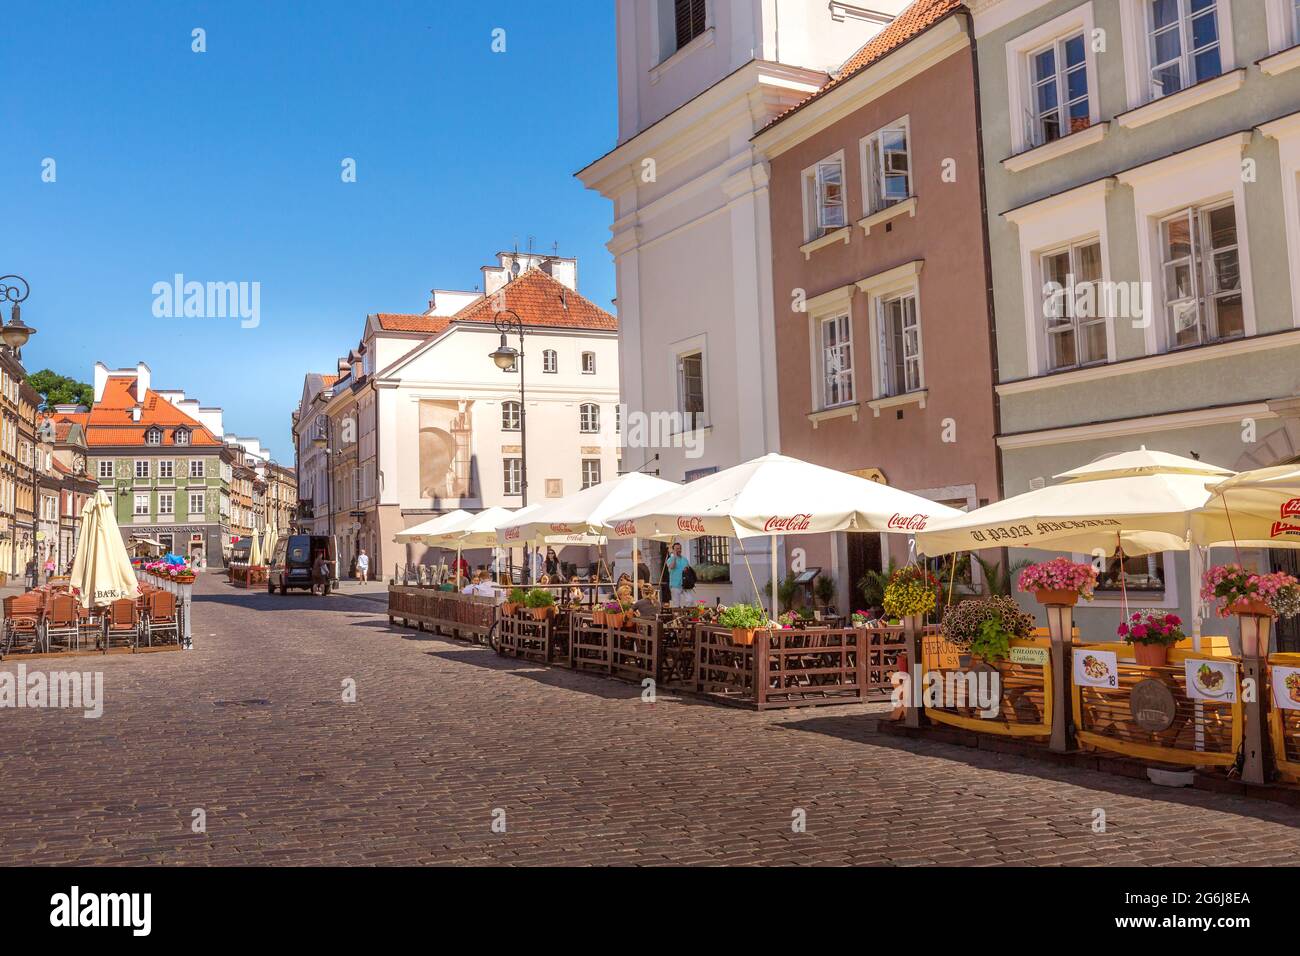 Varsovia, Polonia - Junio 24, 2019: coloridas casas street view en el casco antiguo de la capital polaca Foto de stock